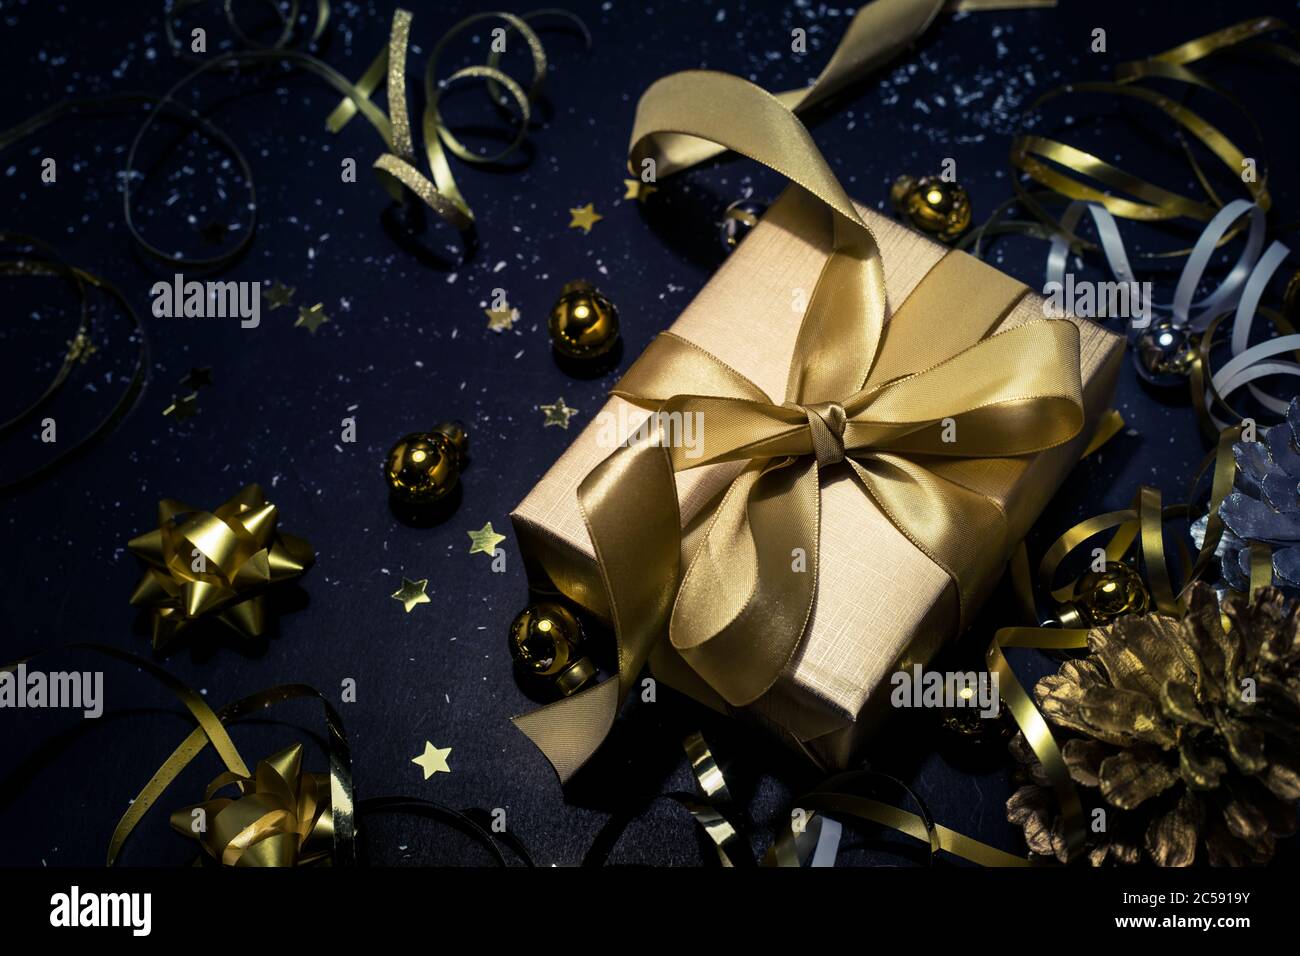 Buon natale, Natale e celebrazione concetti con scatola regalo e ornamento in colore dorato su sfondo scuro.stagione invernale e giorno di anniversario Foto Stock